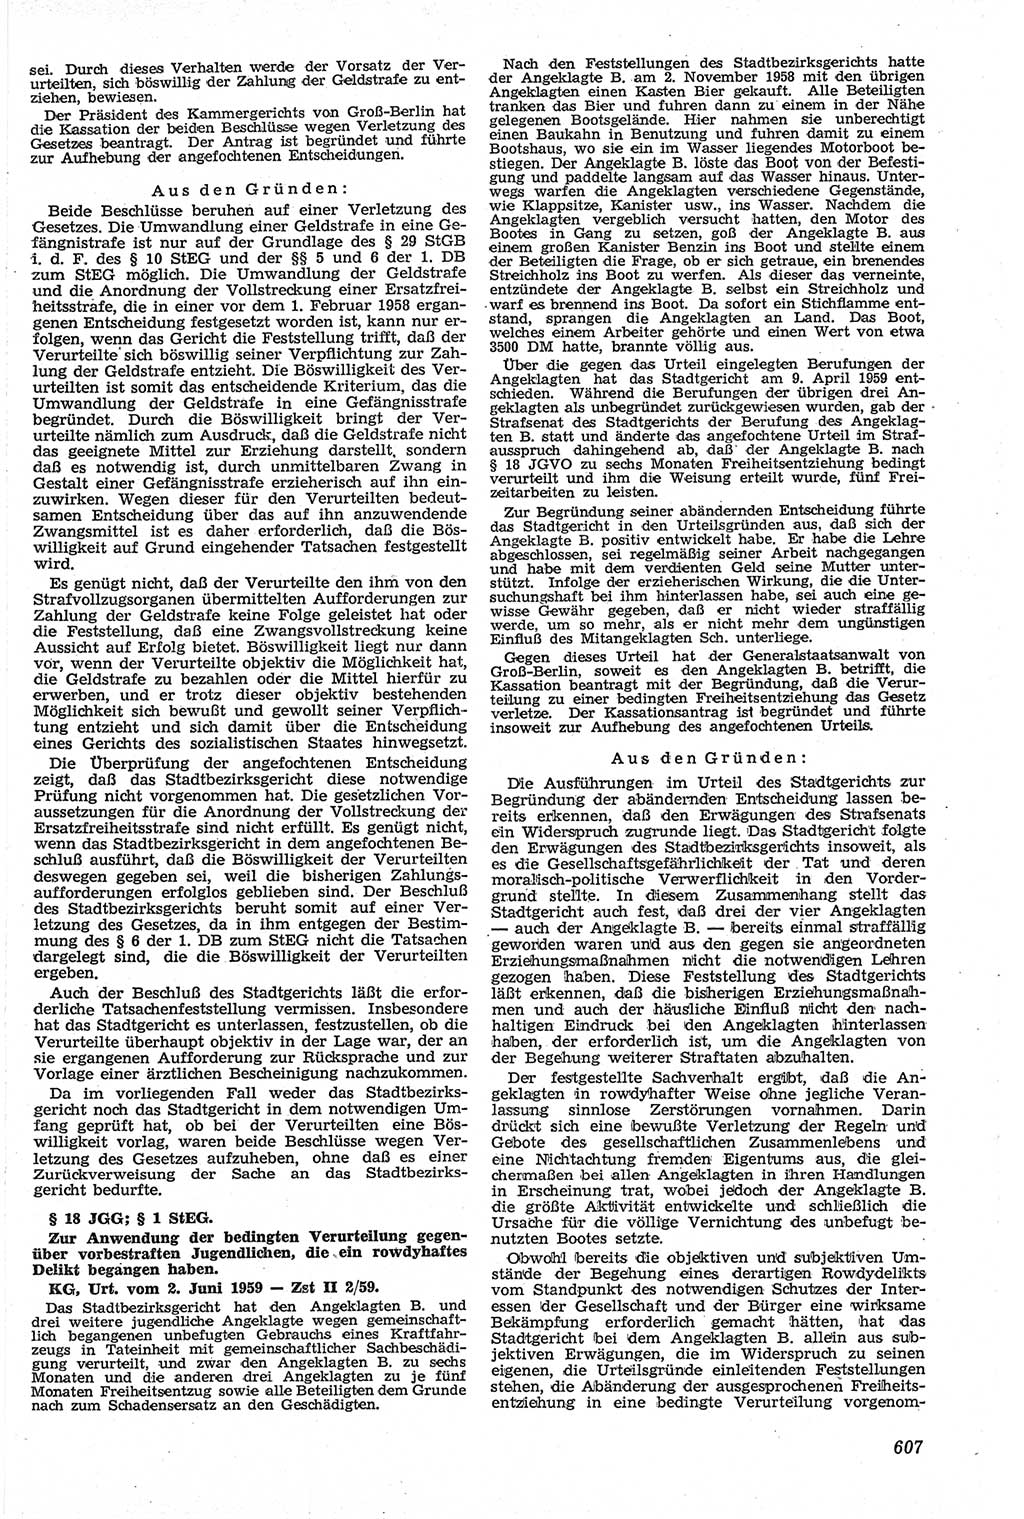 Neue Justiz (NJ), Zeitschrift für Recht und Rechtswissenschaft [Deutsche Demokratische Republik (DDR)], 13. Jahrgang 1959, Seite 607 (NJ DDR 1959, S. 607)